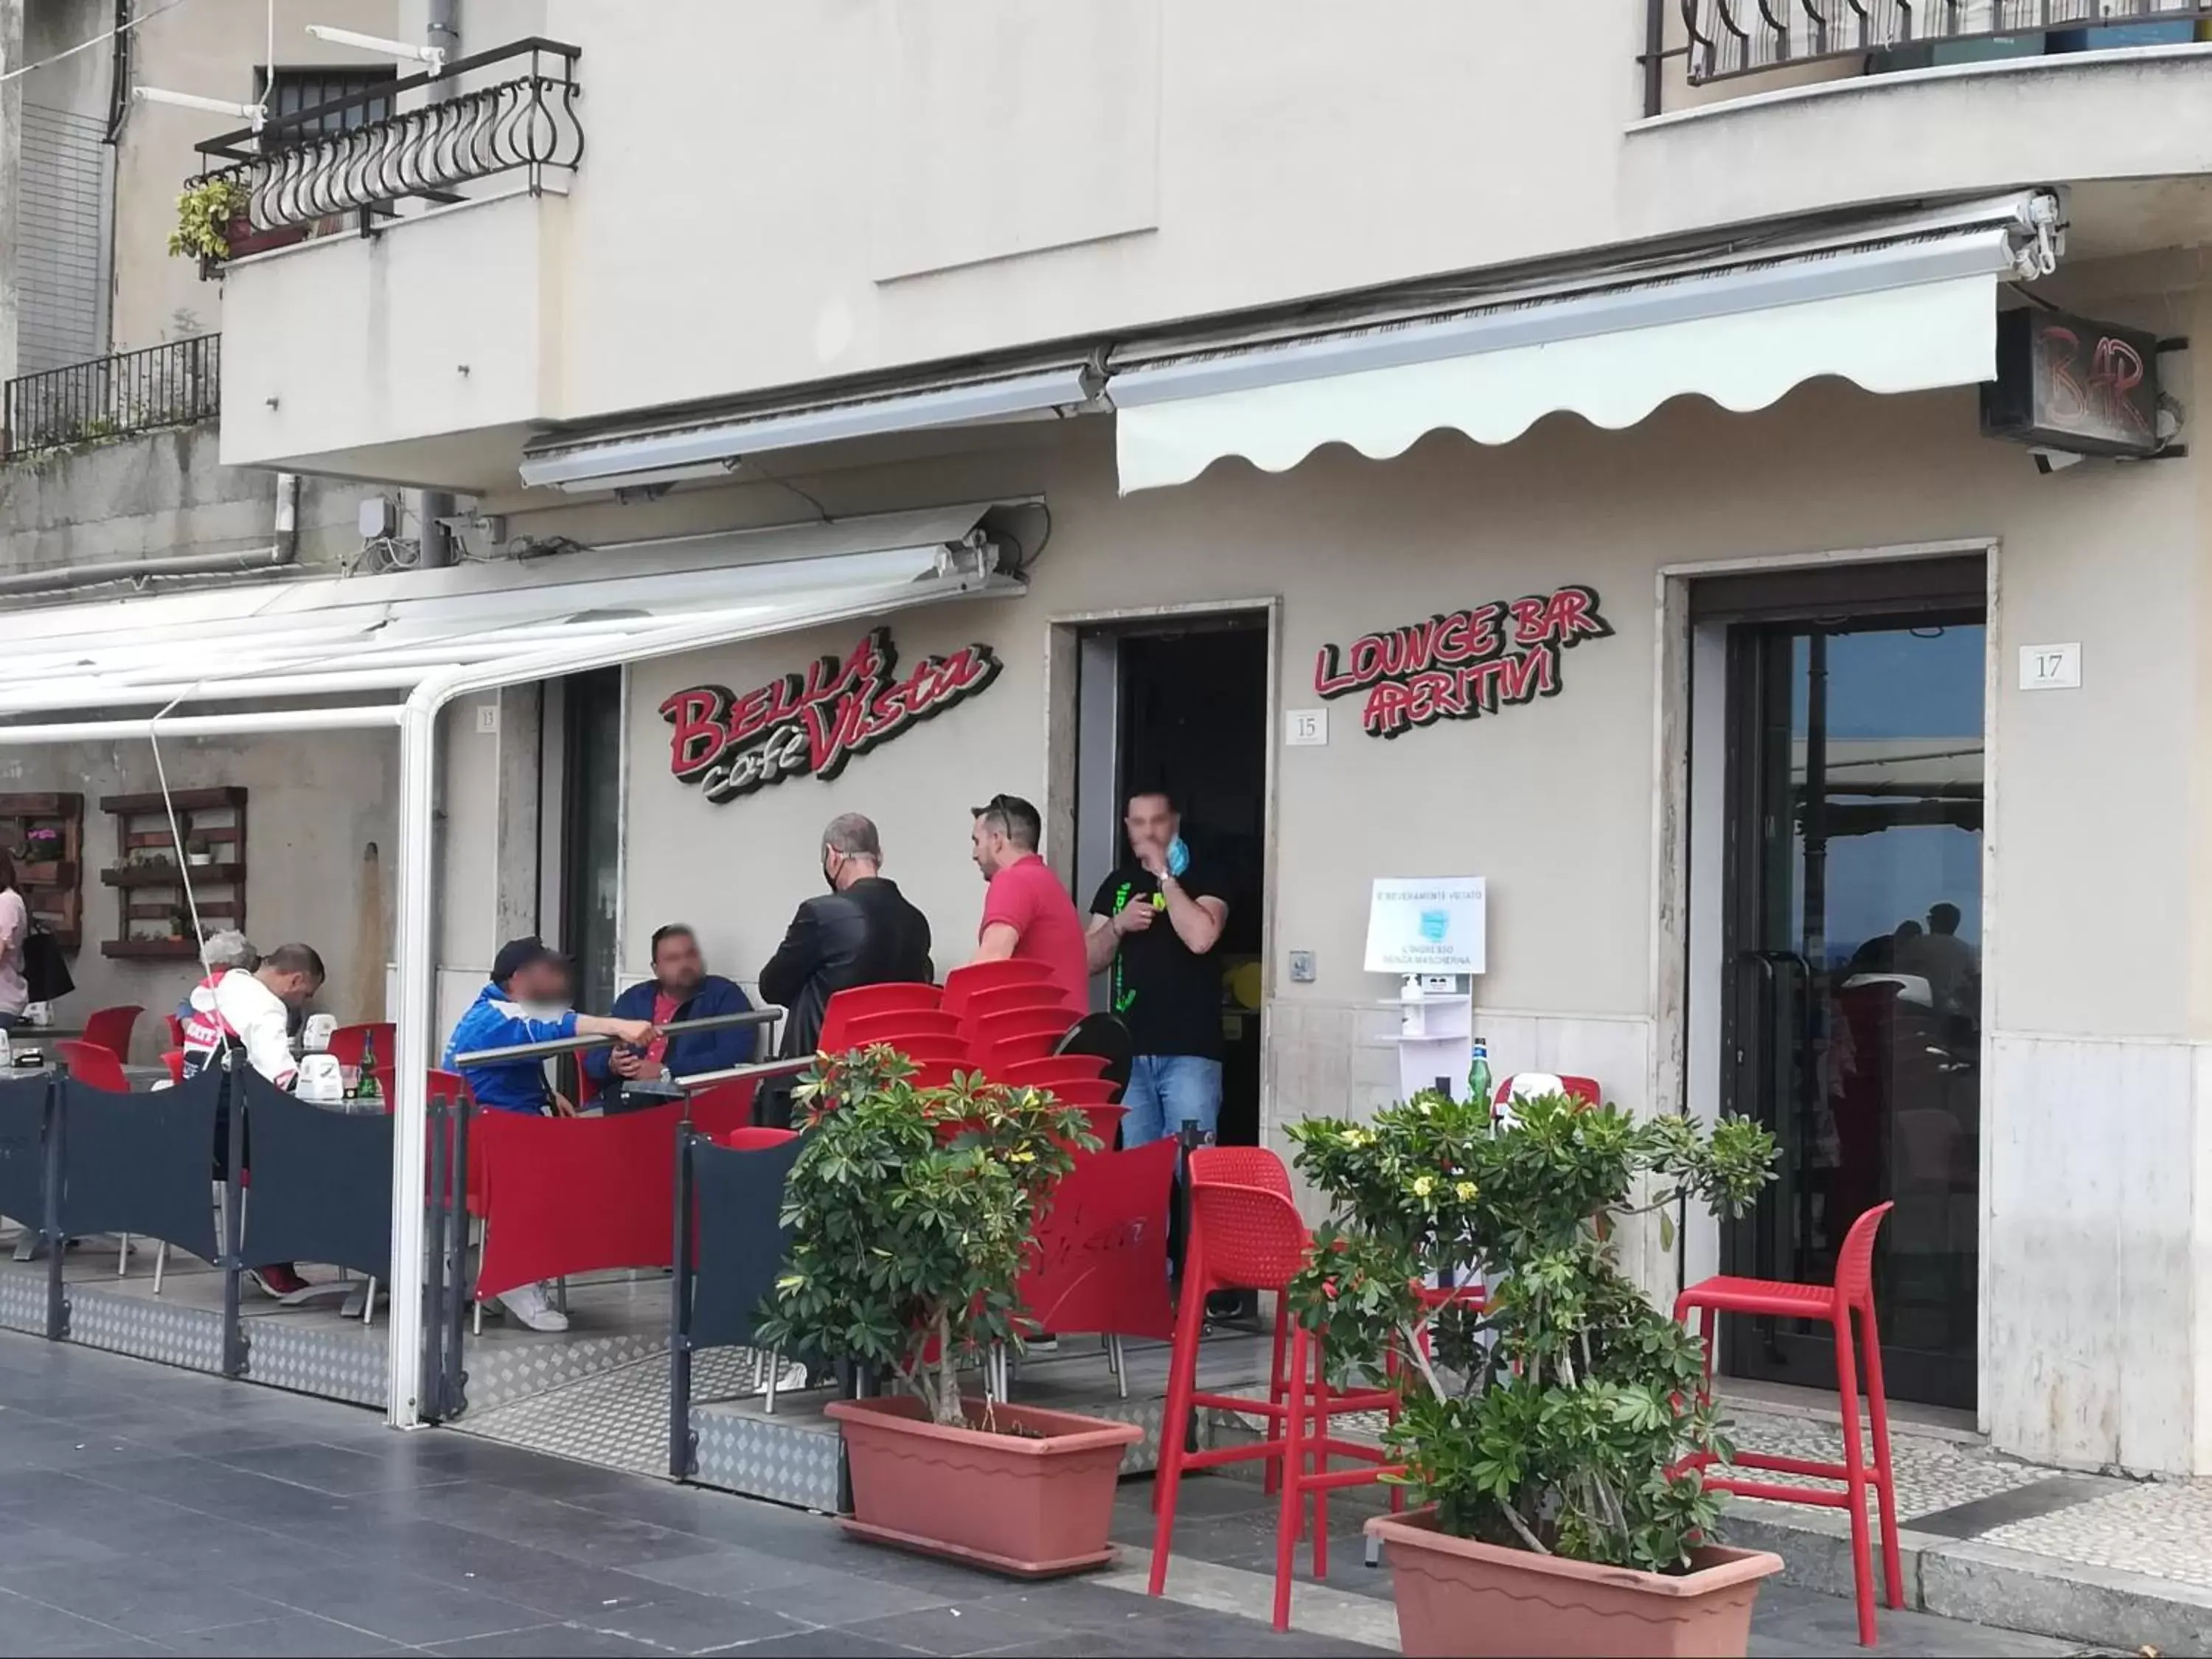 Breakfast in B&B La Bastia